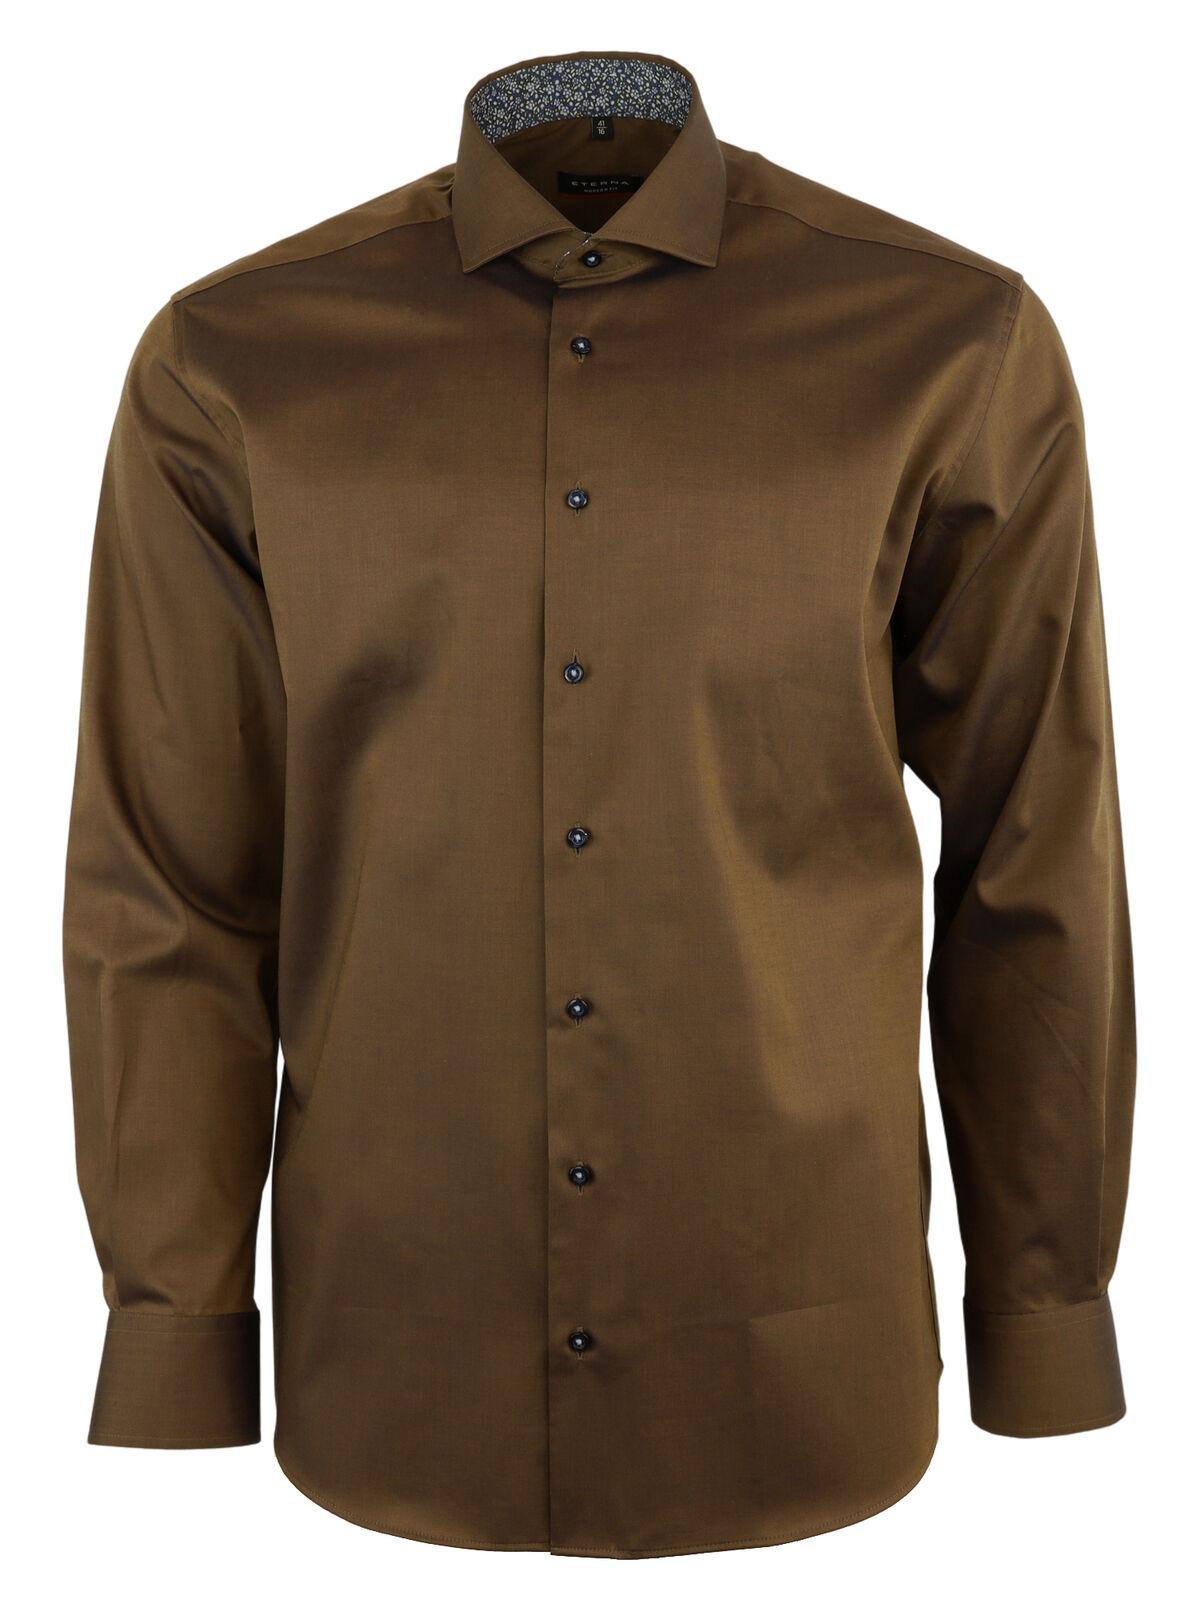 Мужская рубашка ETERNA, коричневая, цвет коричневый, размер 44 - фото 3